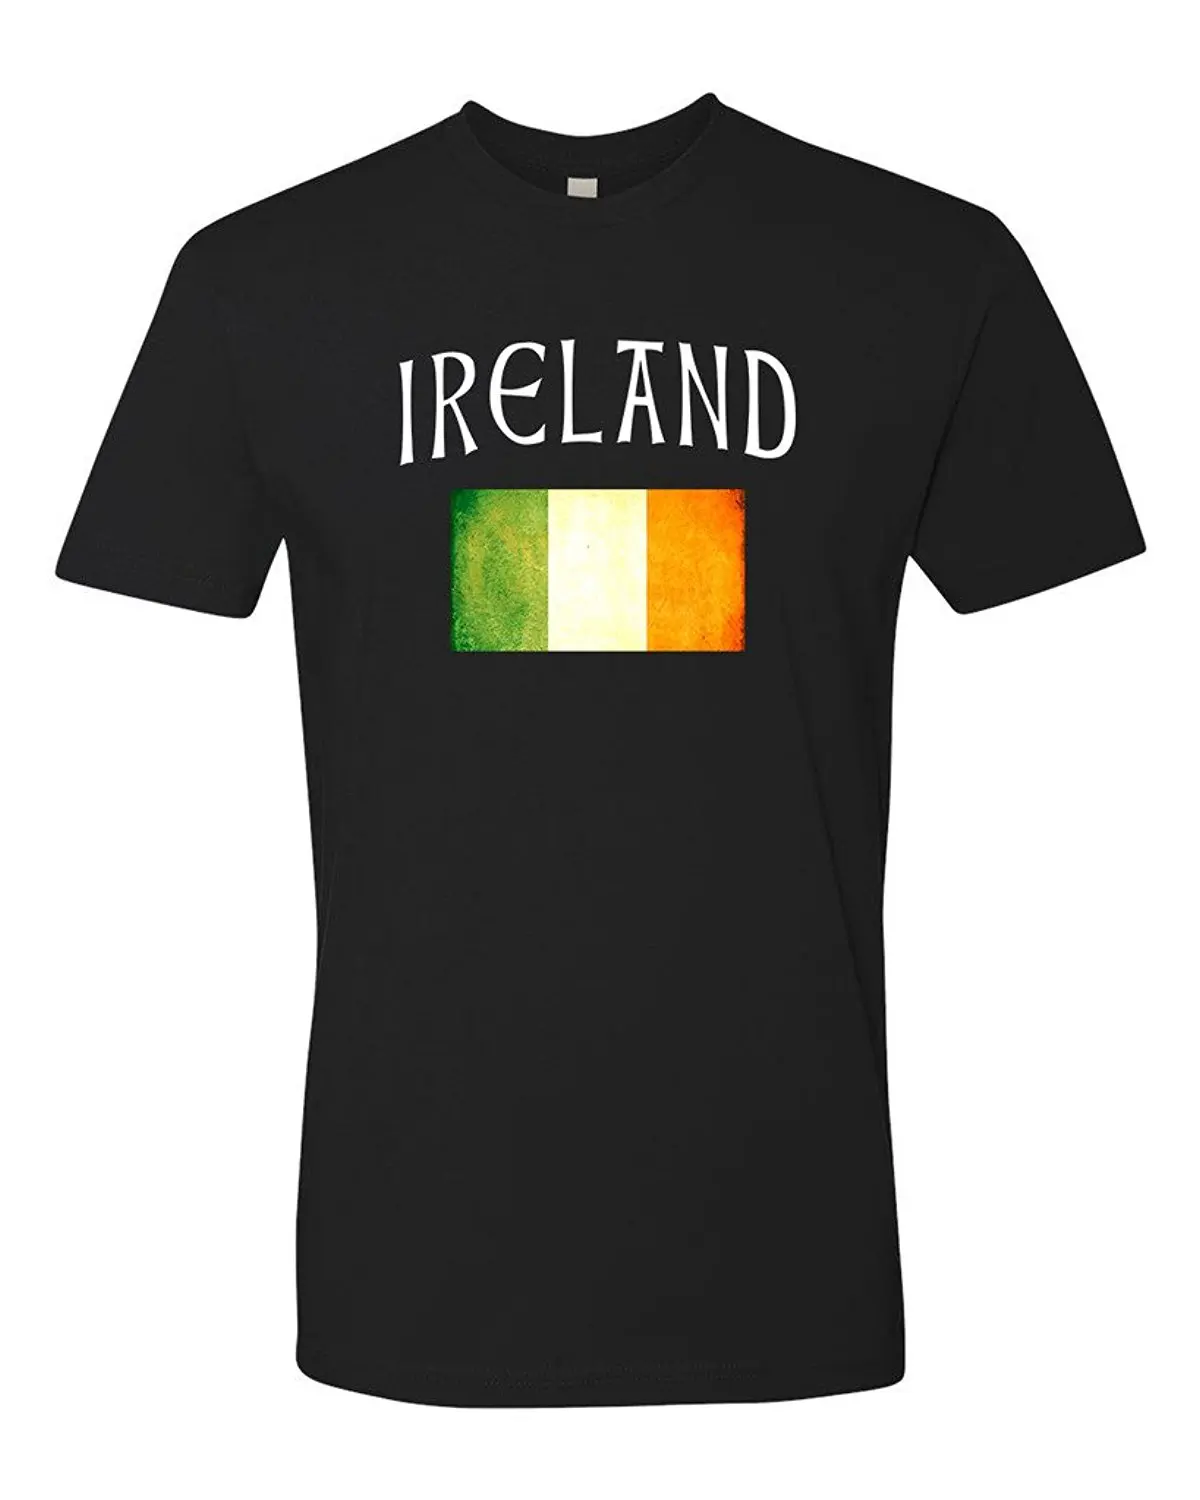 Panoware Men's Irish Flag Ireland T Shirt Fashion New Top